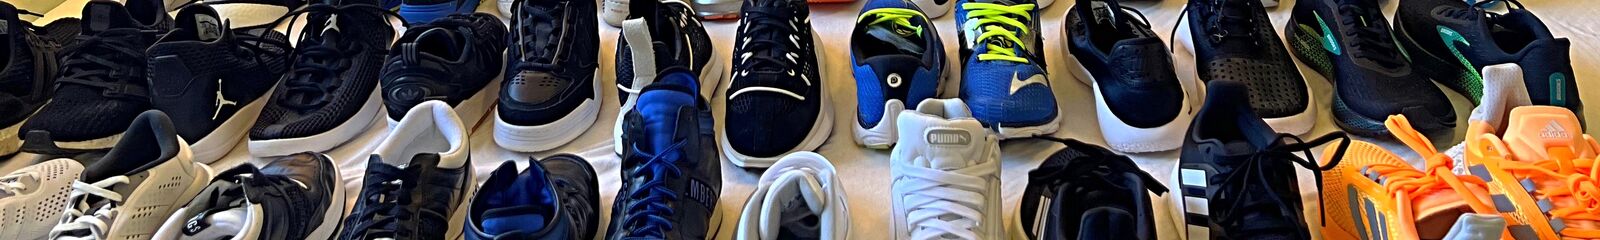 Sneaker lovers